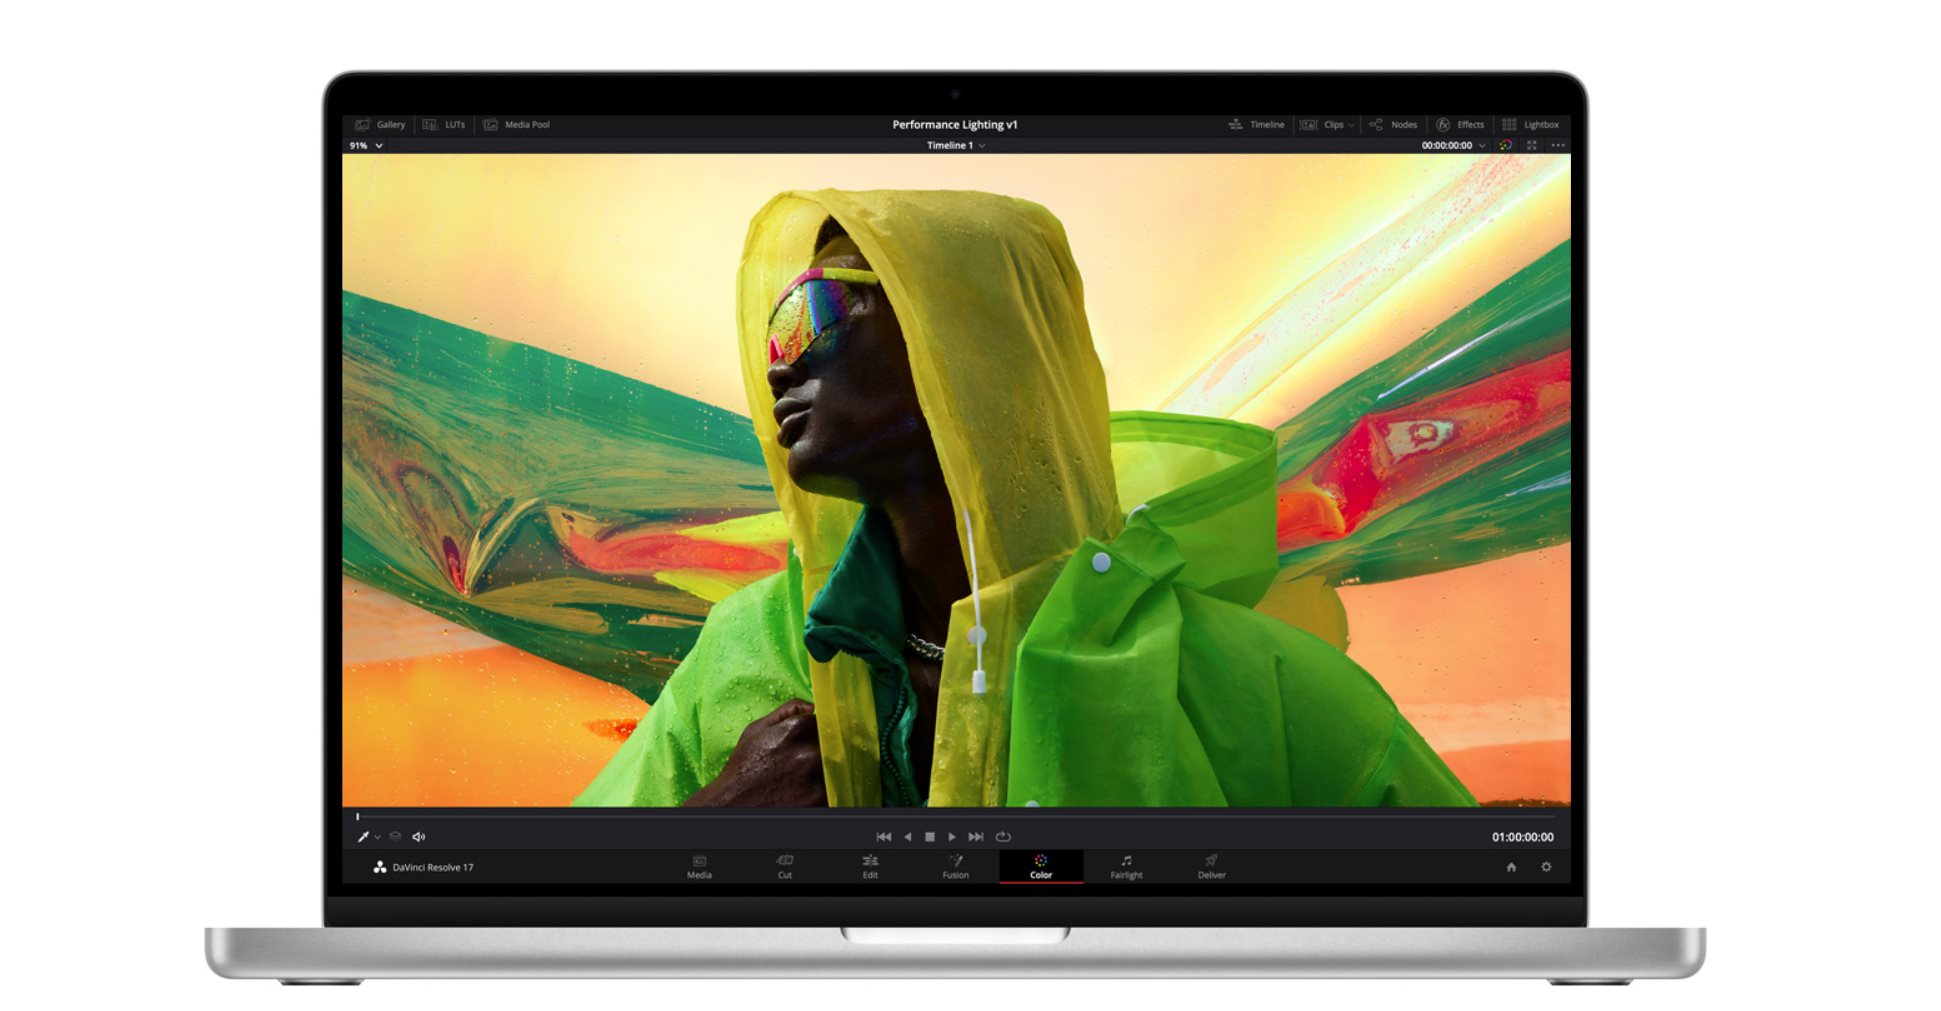 Test : Cet iMac est-il enfin le Mac pour jouer qu'on attendait ?